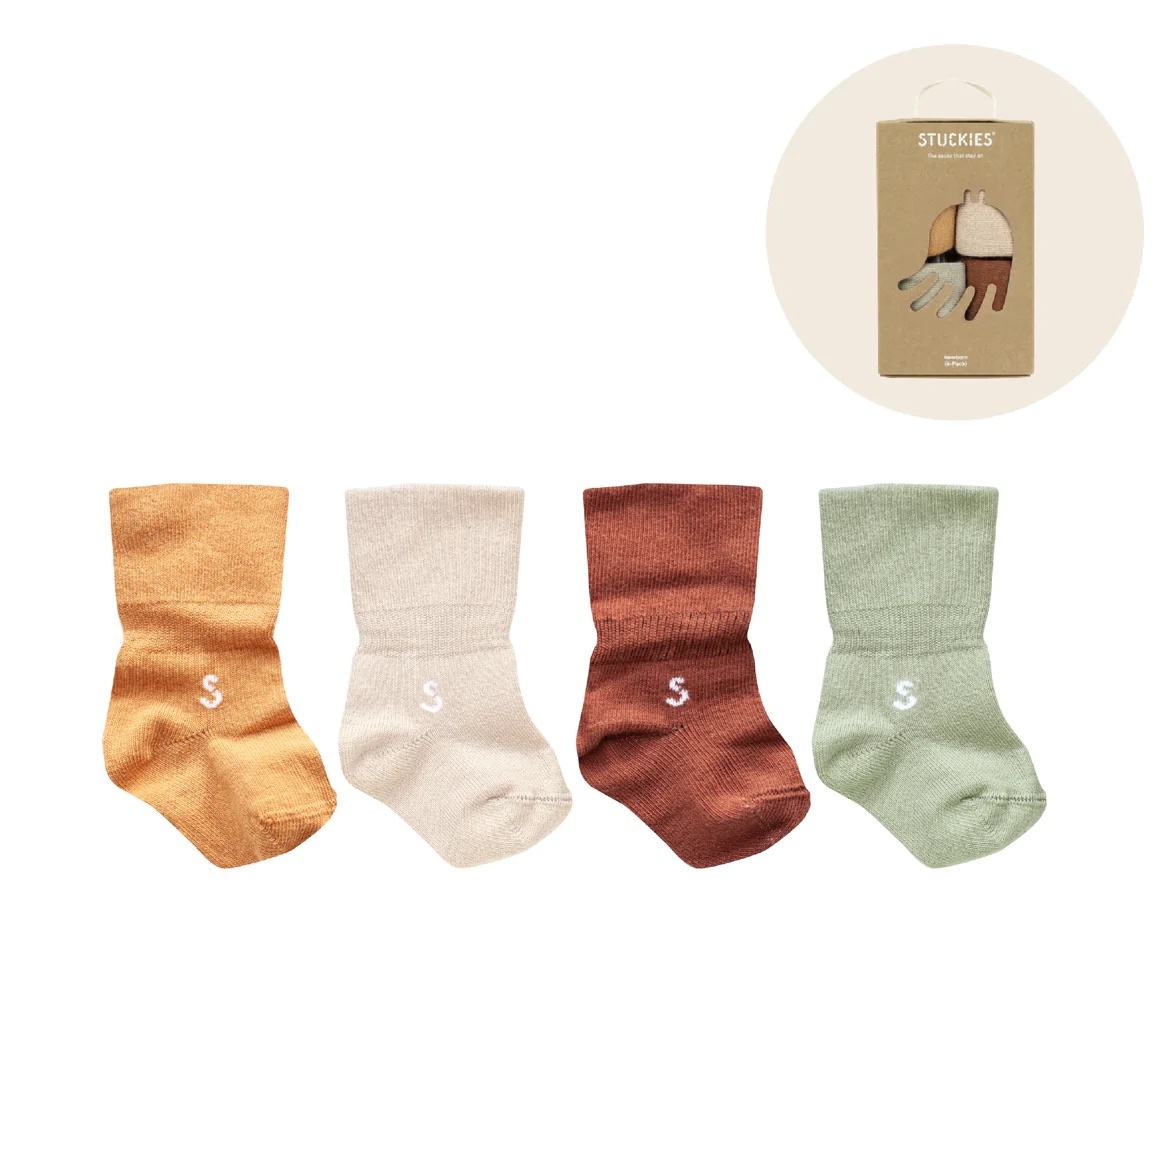 Newborn Socks Gift Set "Dusk"